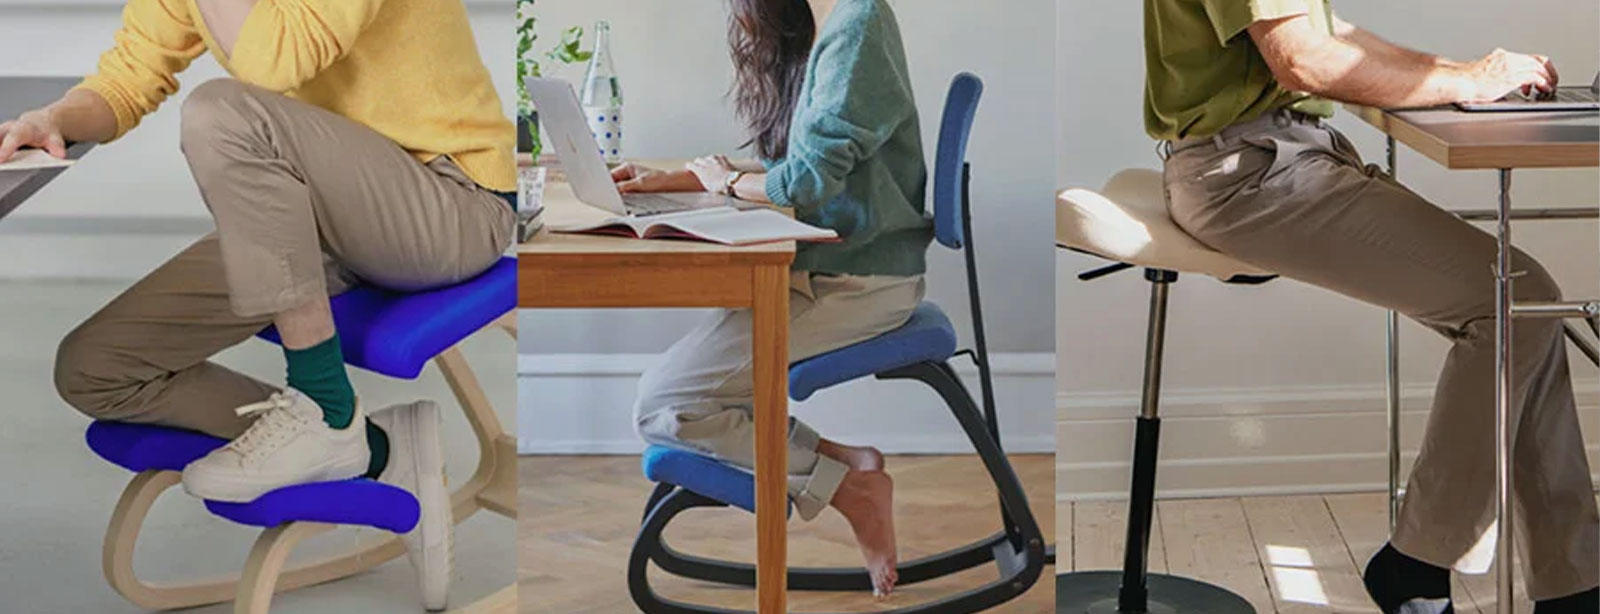 Vale la pena una silla ergonómica de rodilla? - Blog SillaOficina365.